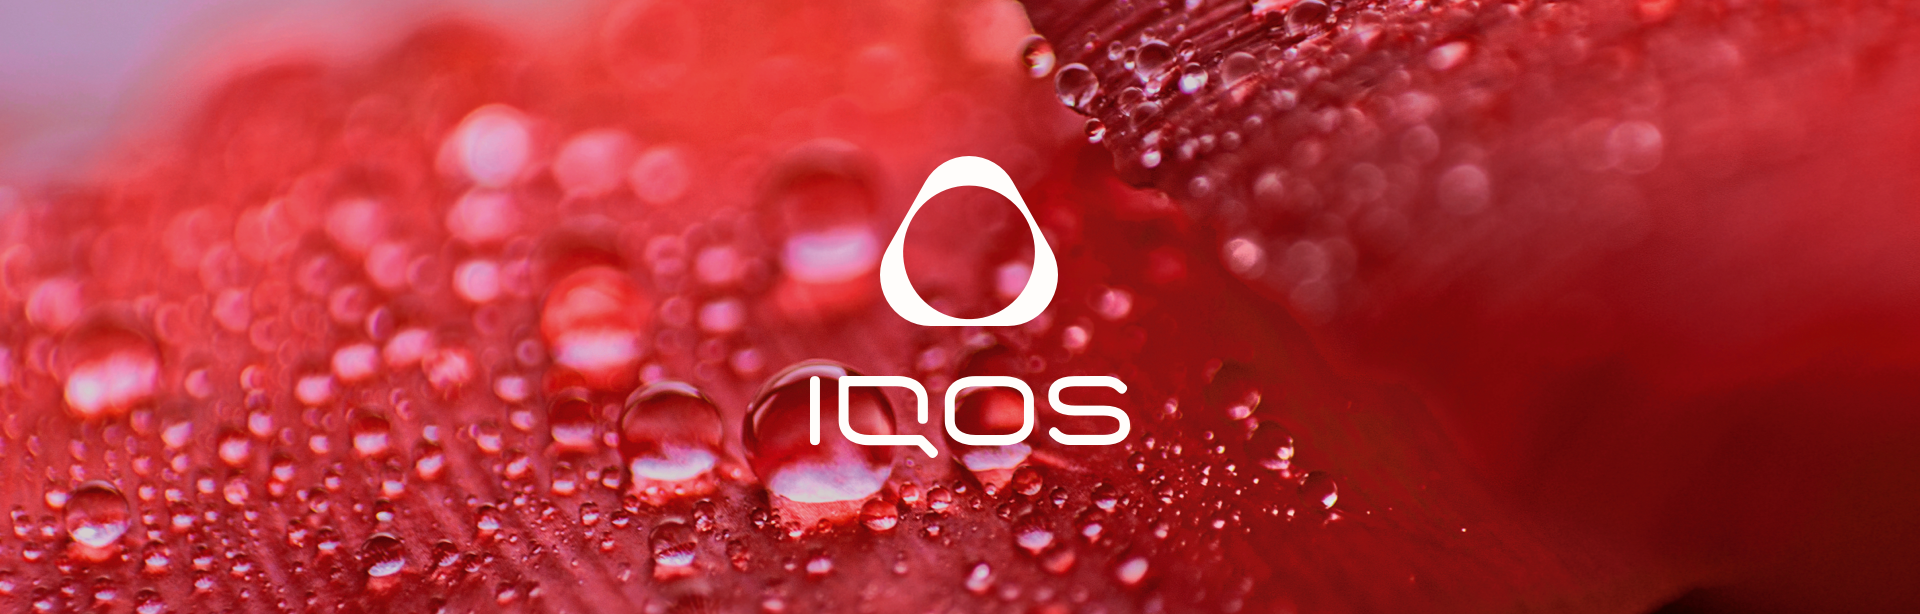 IQOS イルマ専用たばこの新ブランドの全国販売が開始